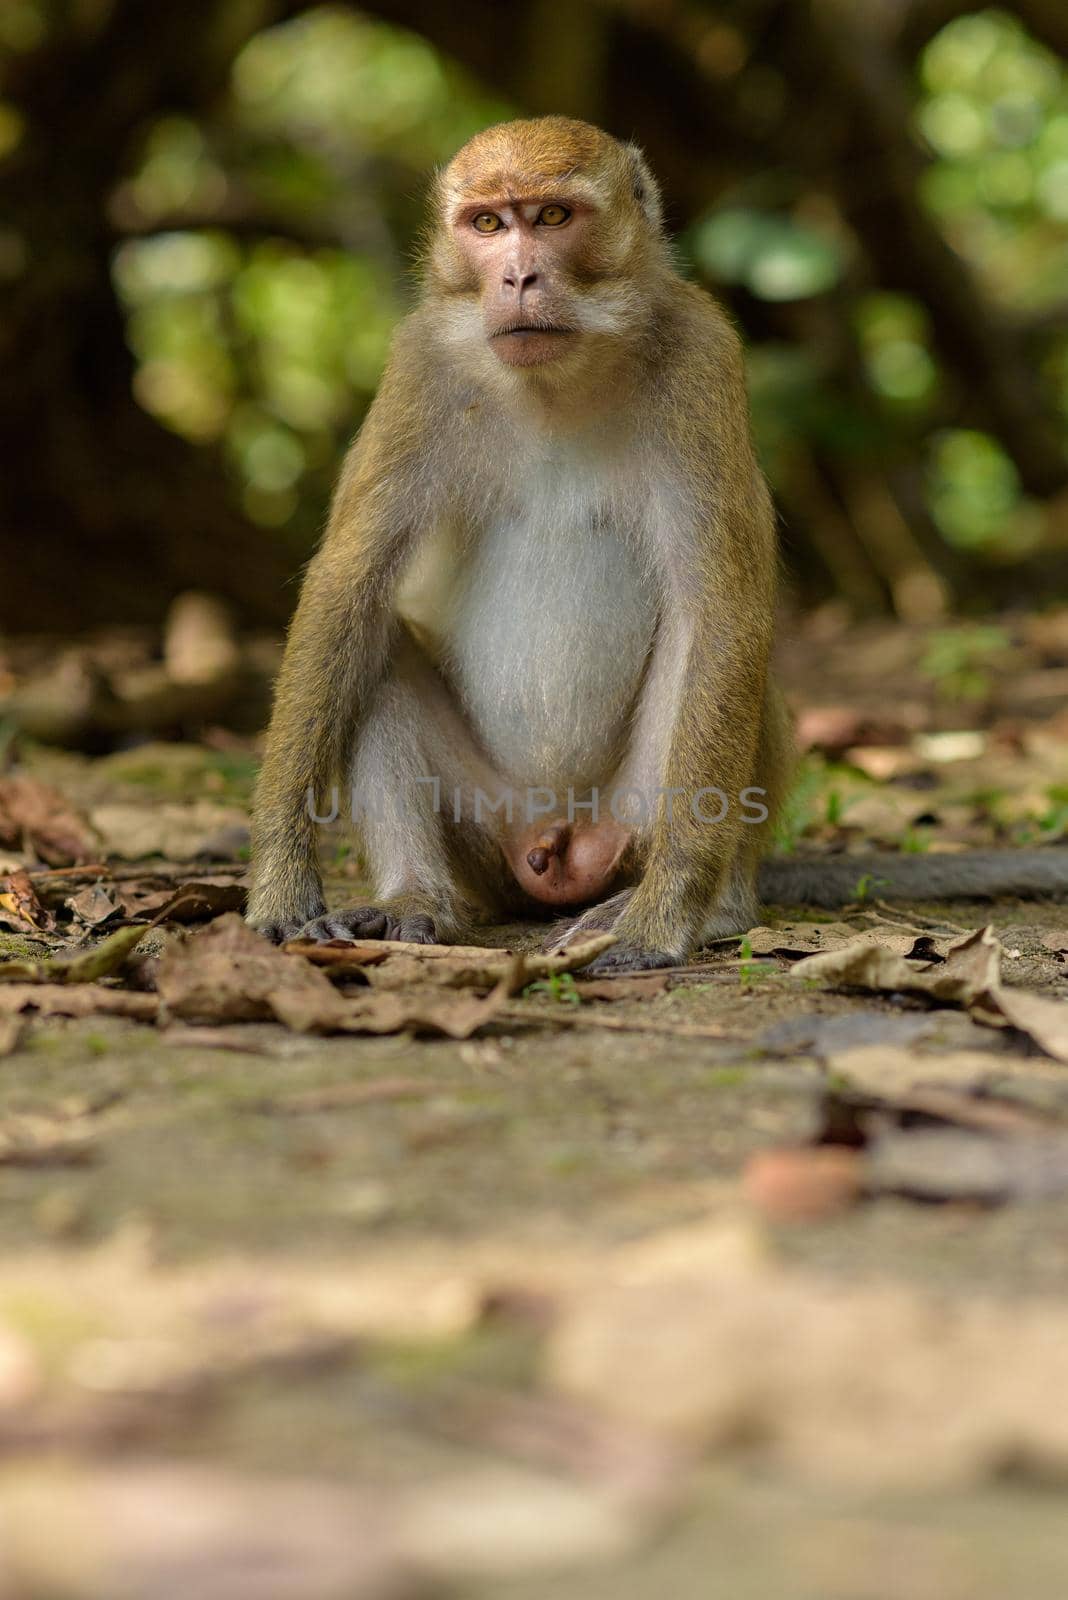 Monkey in the Taman Wisata Alam Pangandaran in Java, Indonesia.